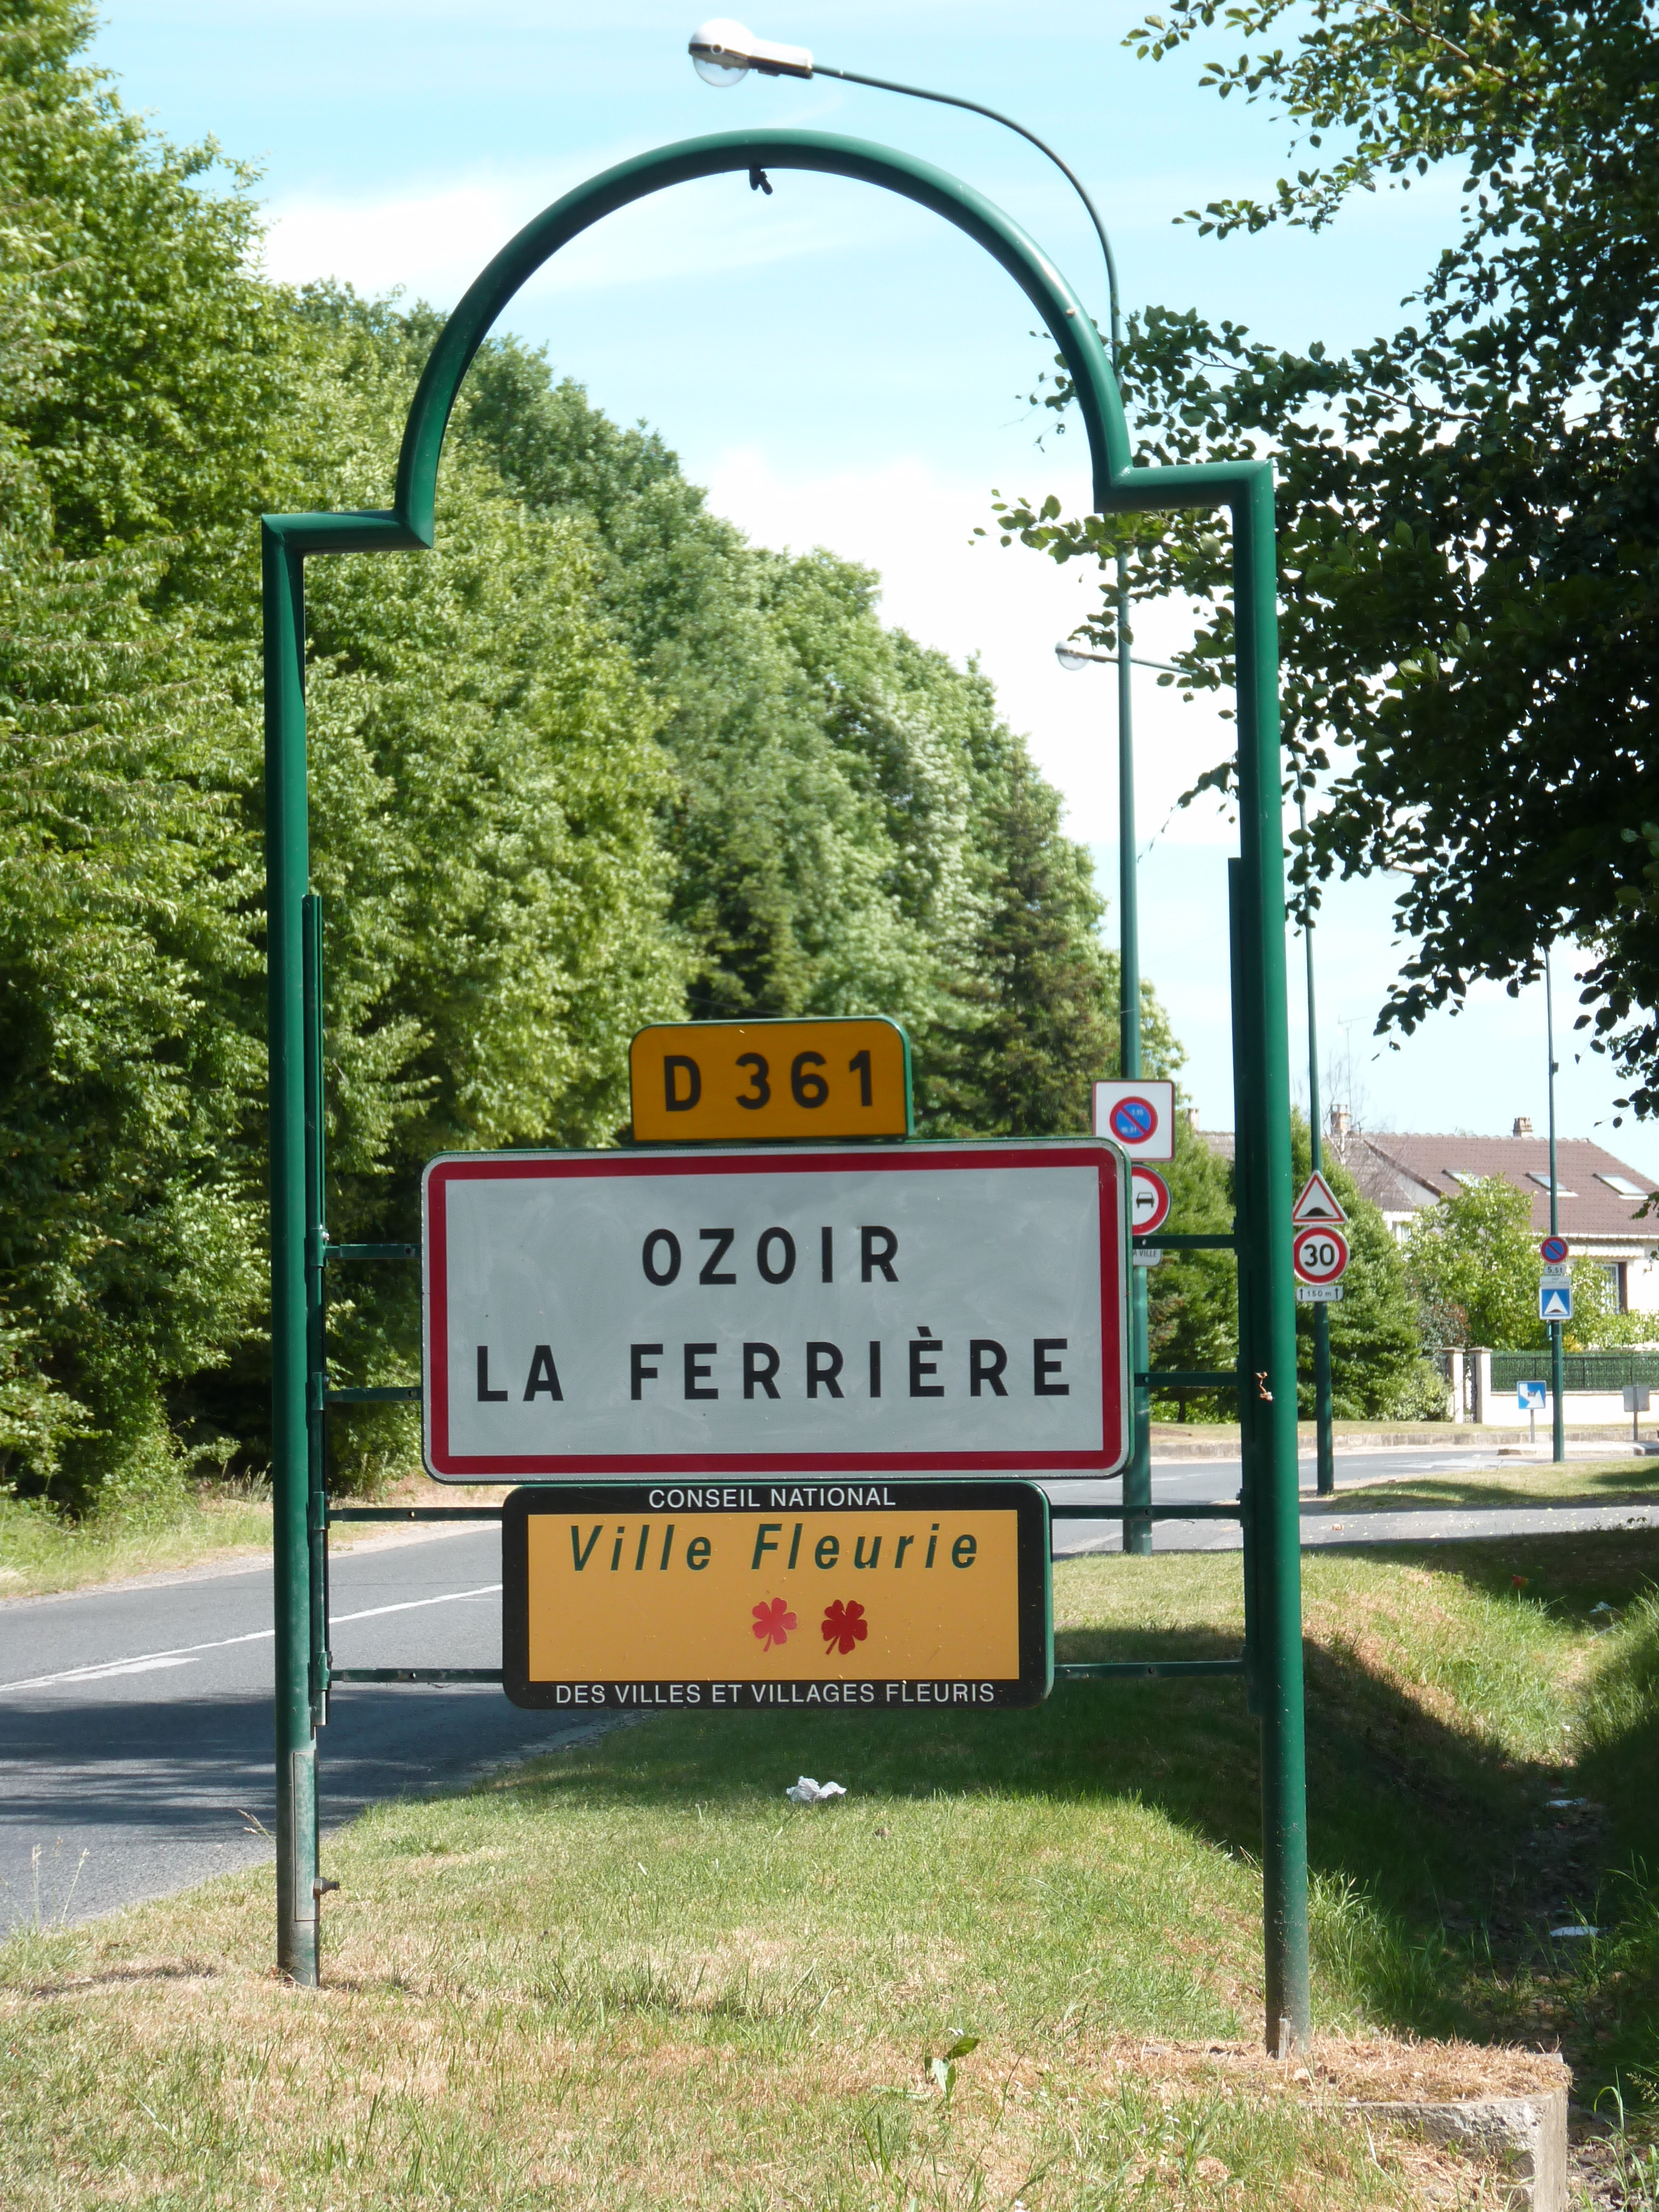 Téléphone de Filles dans Ozoir-la-Ferrière, France